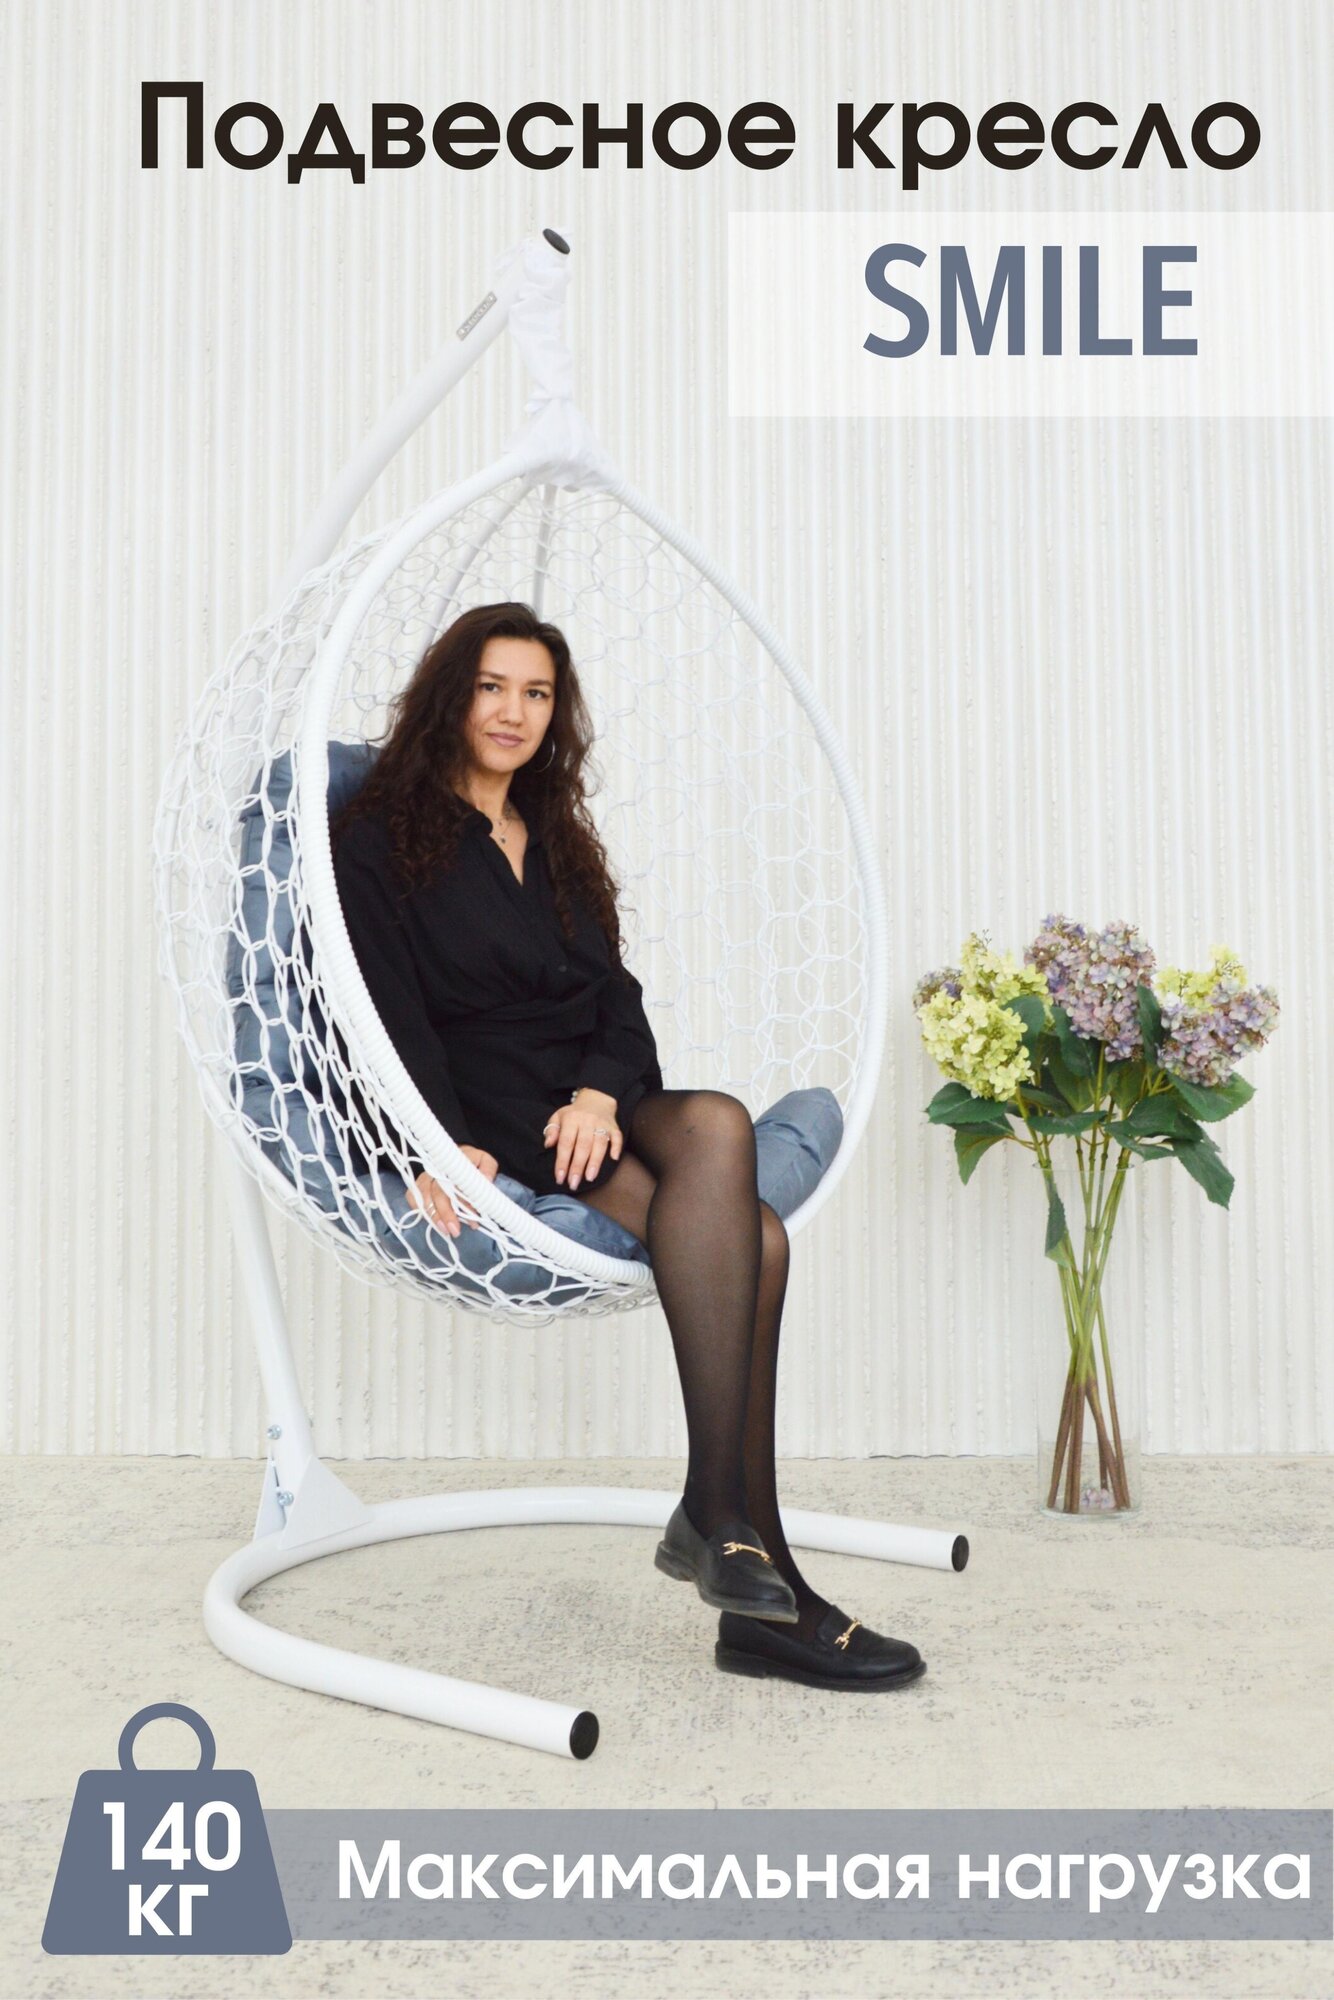 Кресло кокон STULER Smile Стандарт, 105х175 см, до 140кг, Белое с серой подушкой